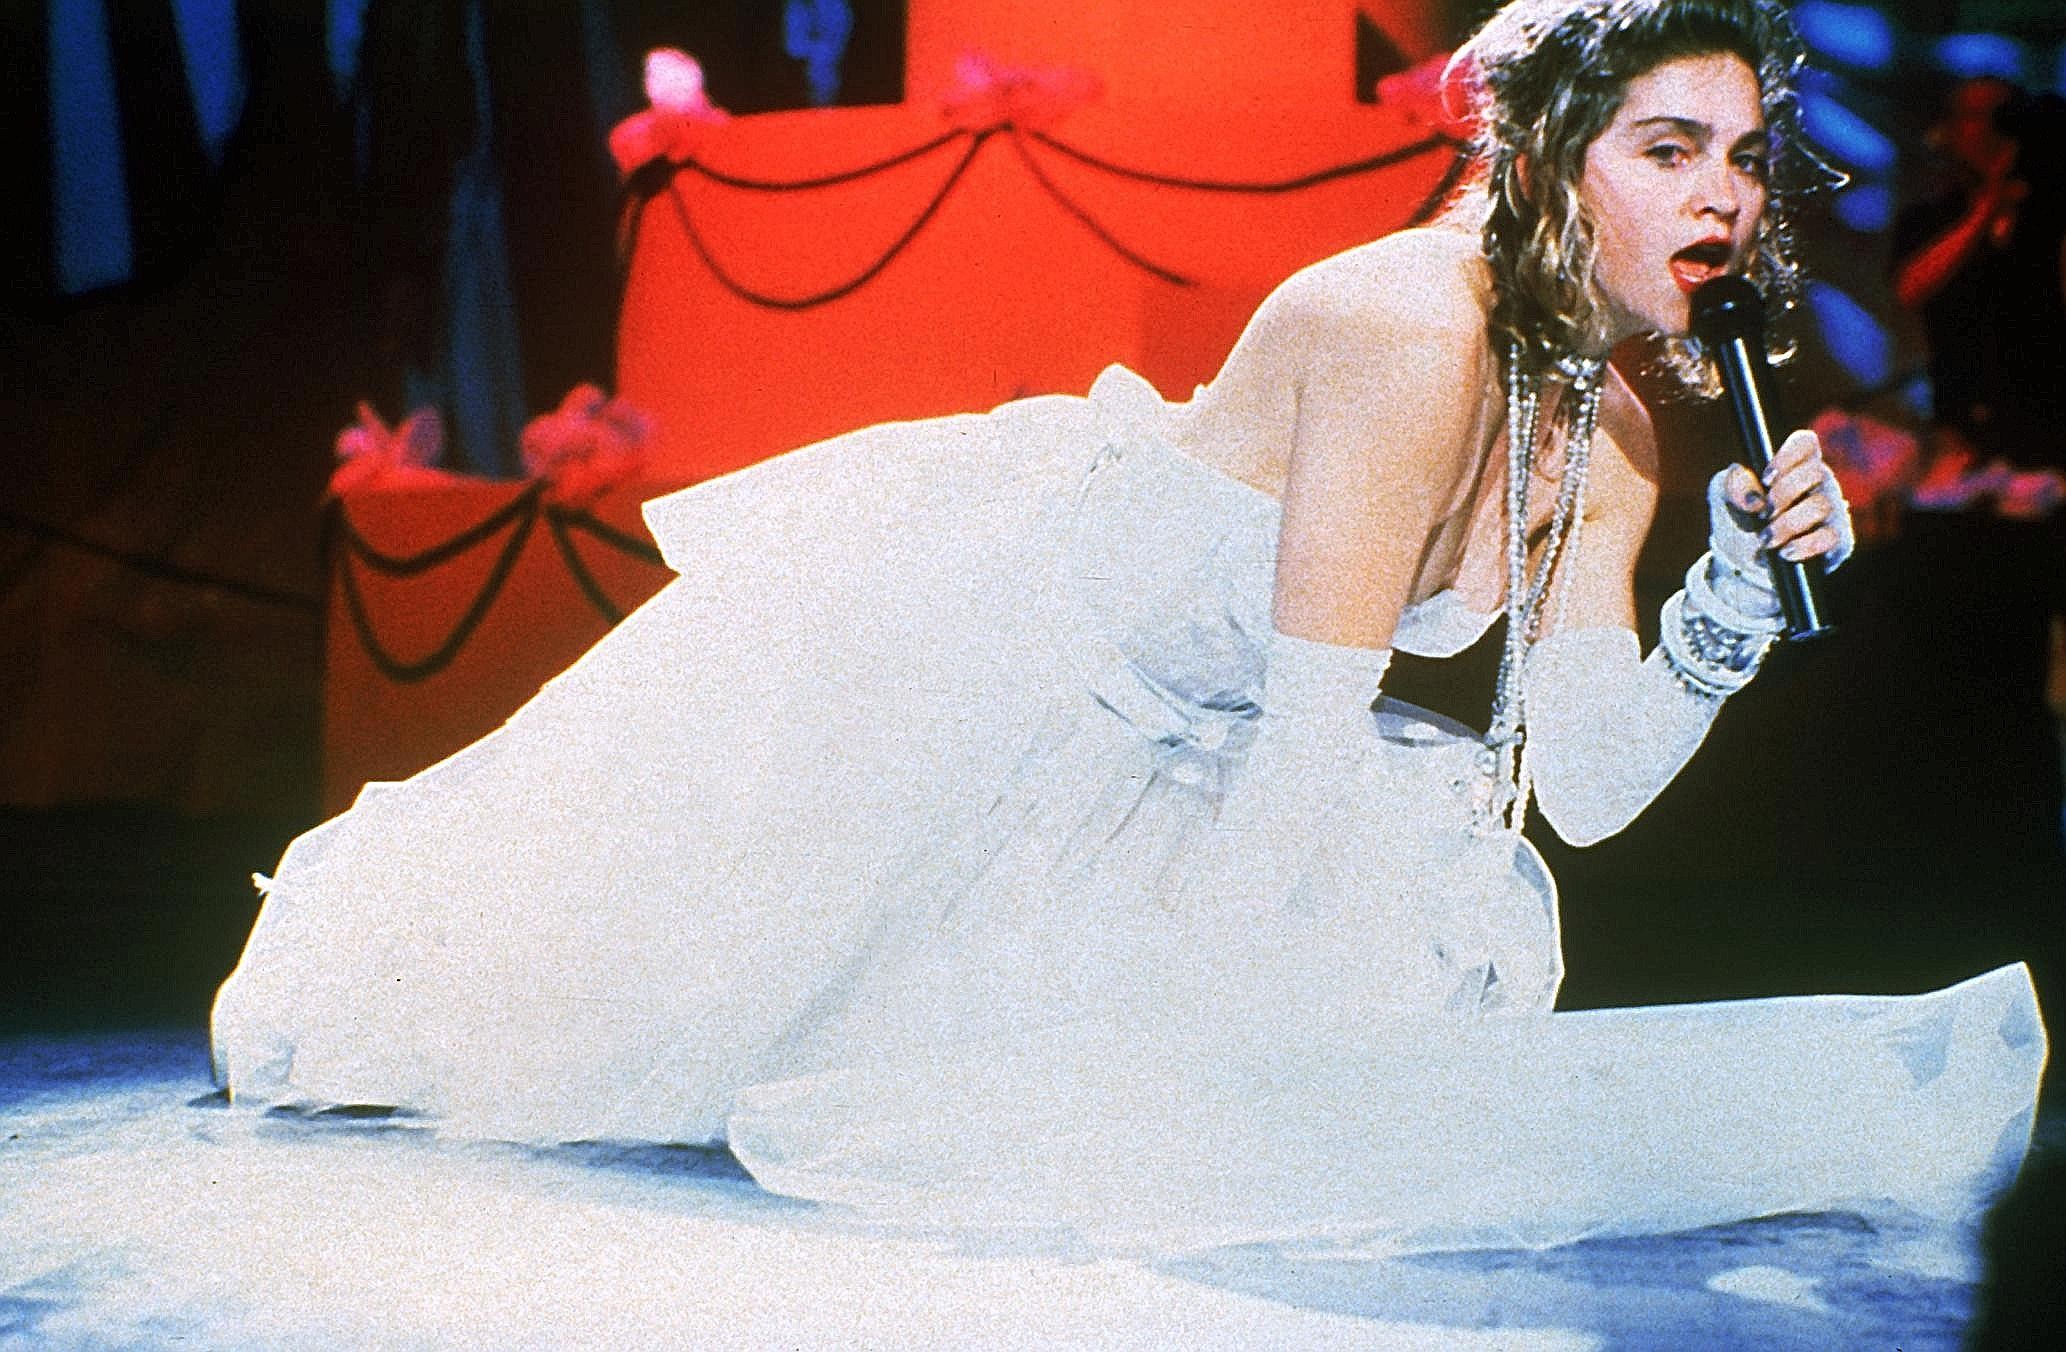 ... wird seit 1984 vergeben. Aus diesem Jahr stammt auch diese Aufnahme einer ziemlich derangierten Madonna, die ihren Hit Like a virgin zum Besten gab. Die Video Music Awards waren auch immer...